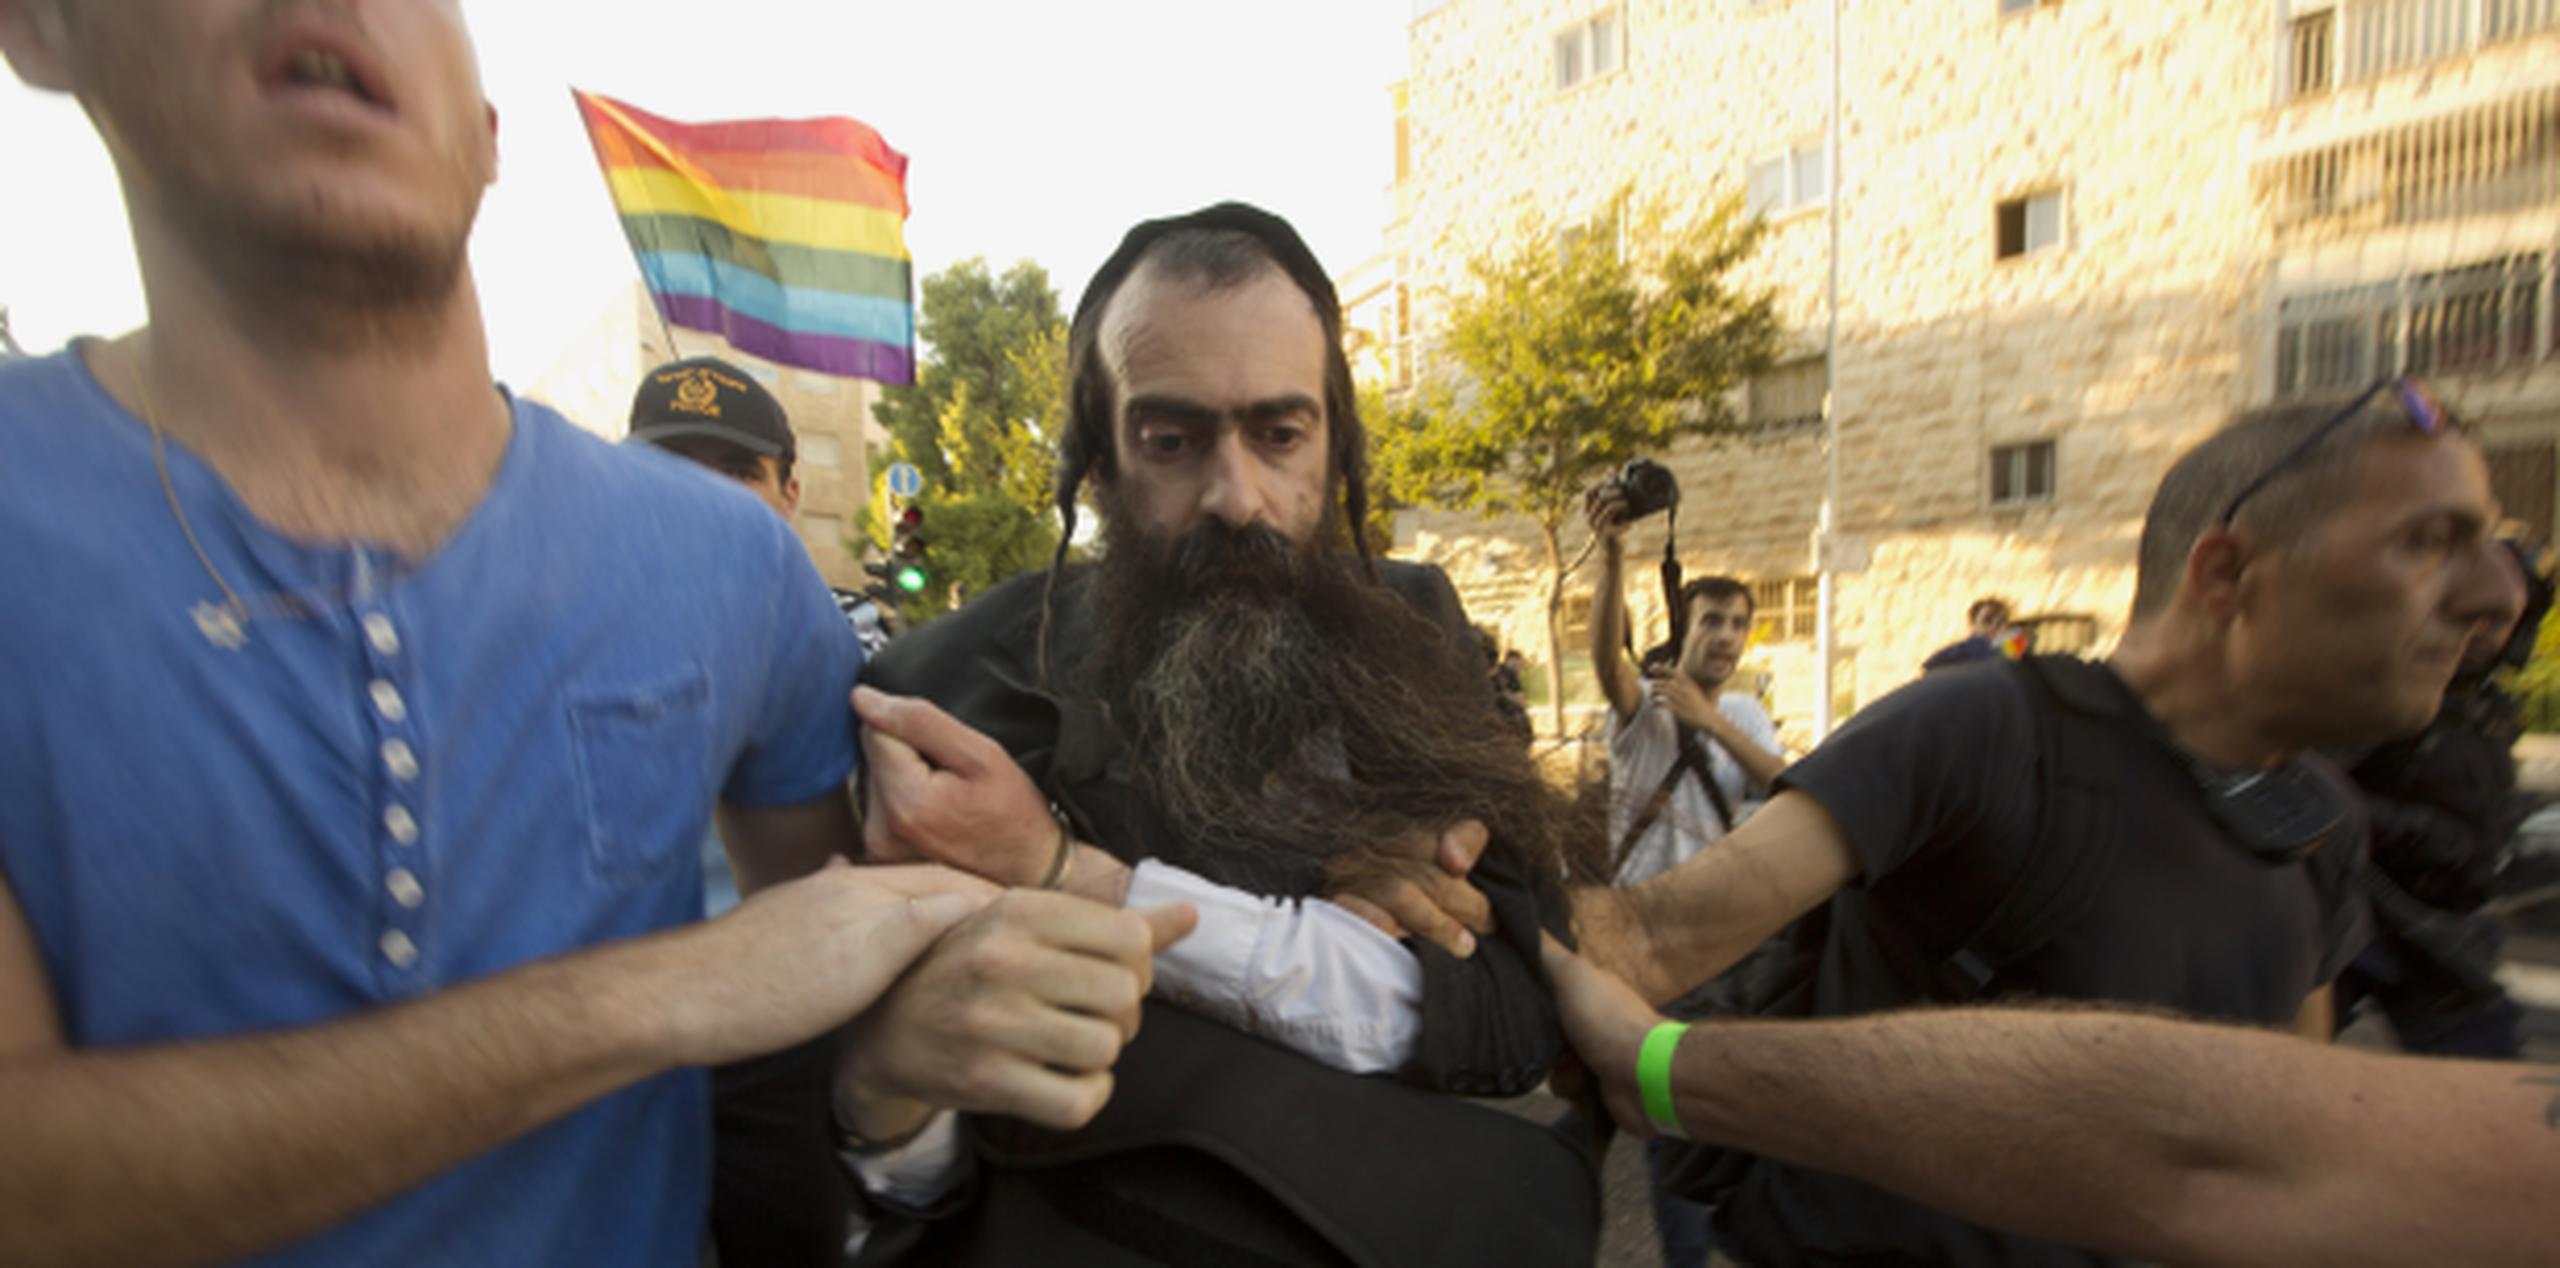 El presunto agresor, Yishai Schlissel, fue detenido el jueves en el desfile luego de que atacara a seis personas con un cuchillo. (AP)